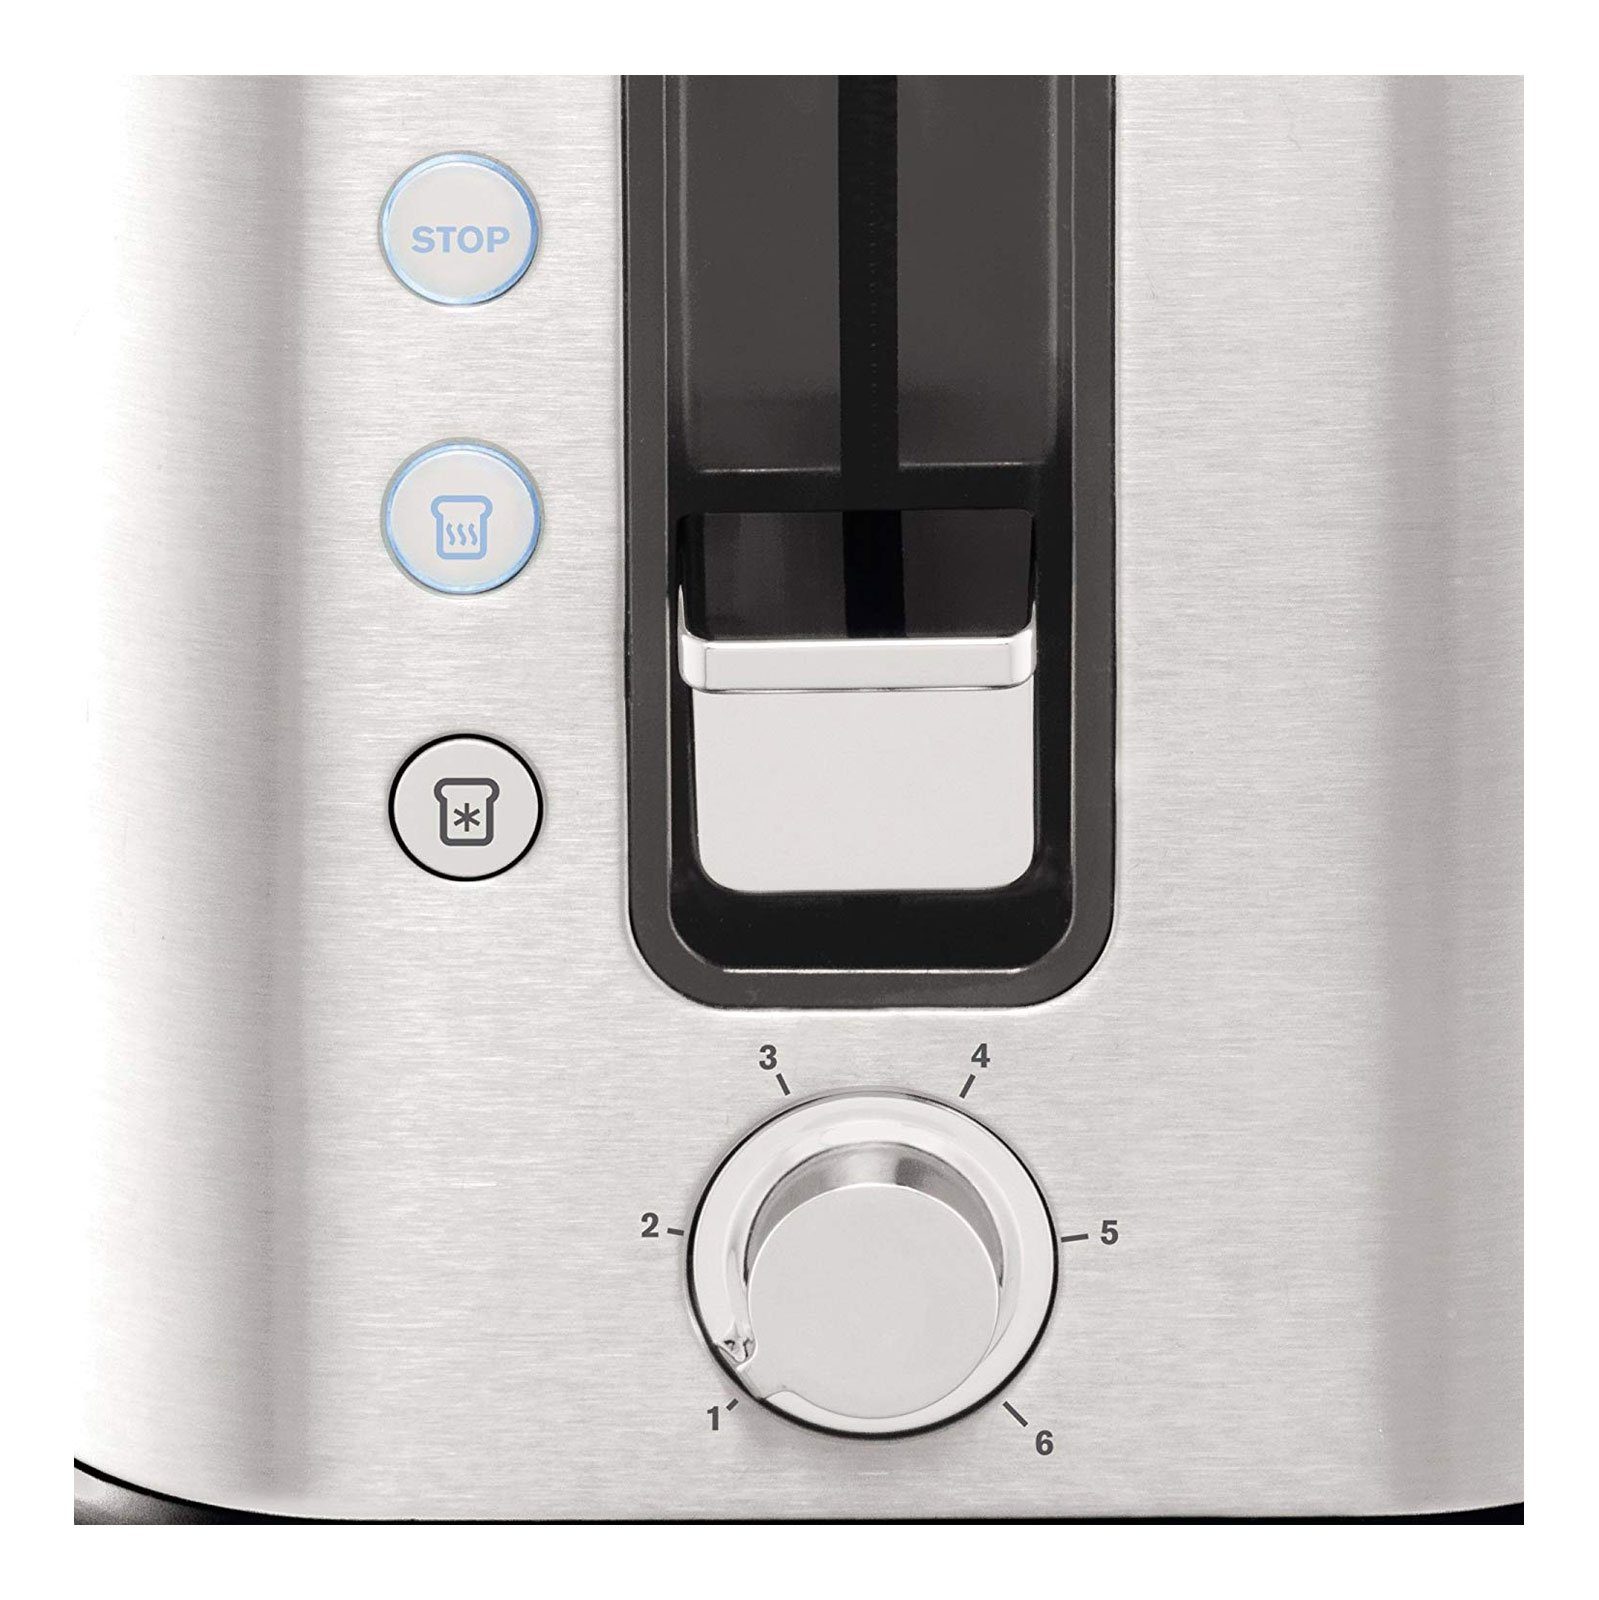 Krups Toaster KH442D Control Line, 2 kurze Schlitze, für 2 Scheiben, 850 W,  6 Stufen, erweiterte Funktionen, Hebefunktion, Krümelschublade, 2 Scheiben  Design-Toaster aus gebürstetem Edelstahl